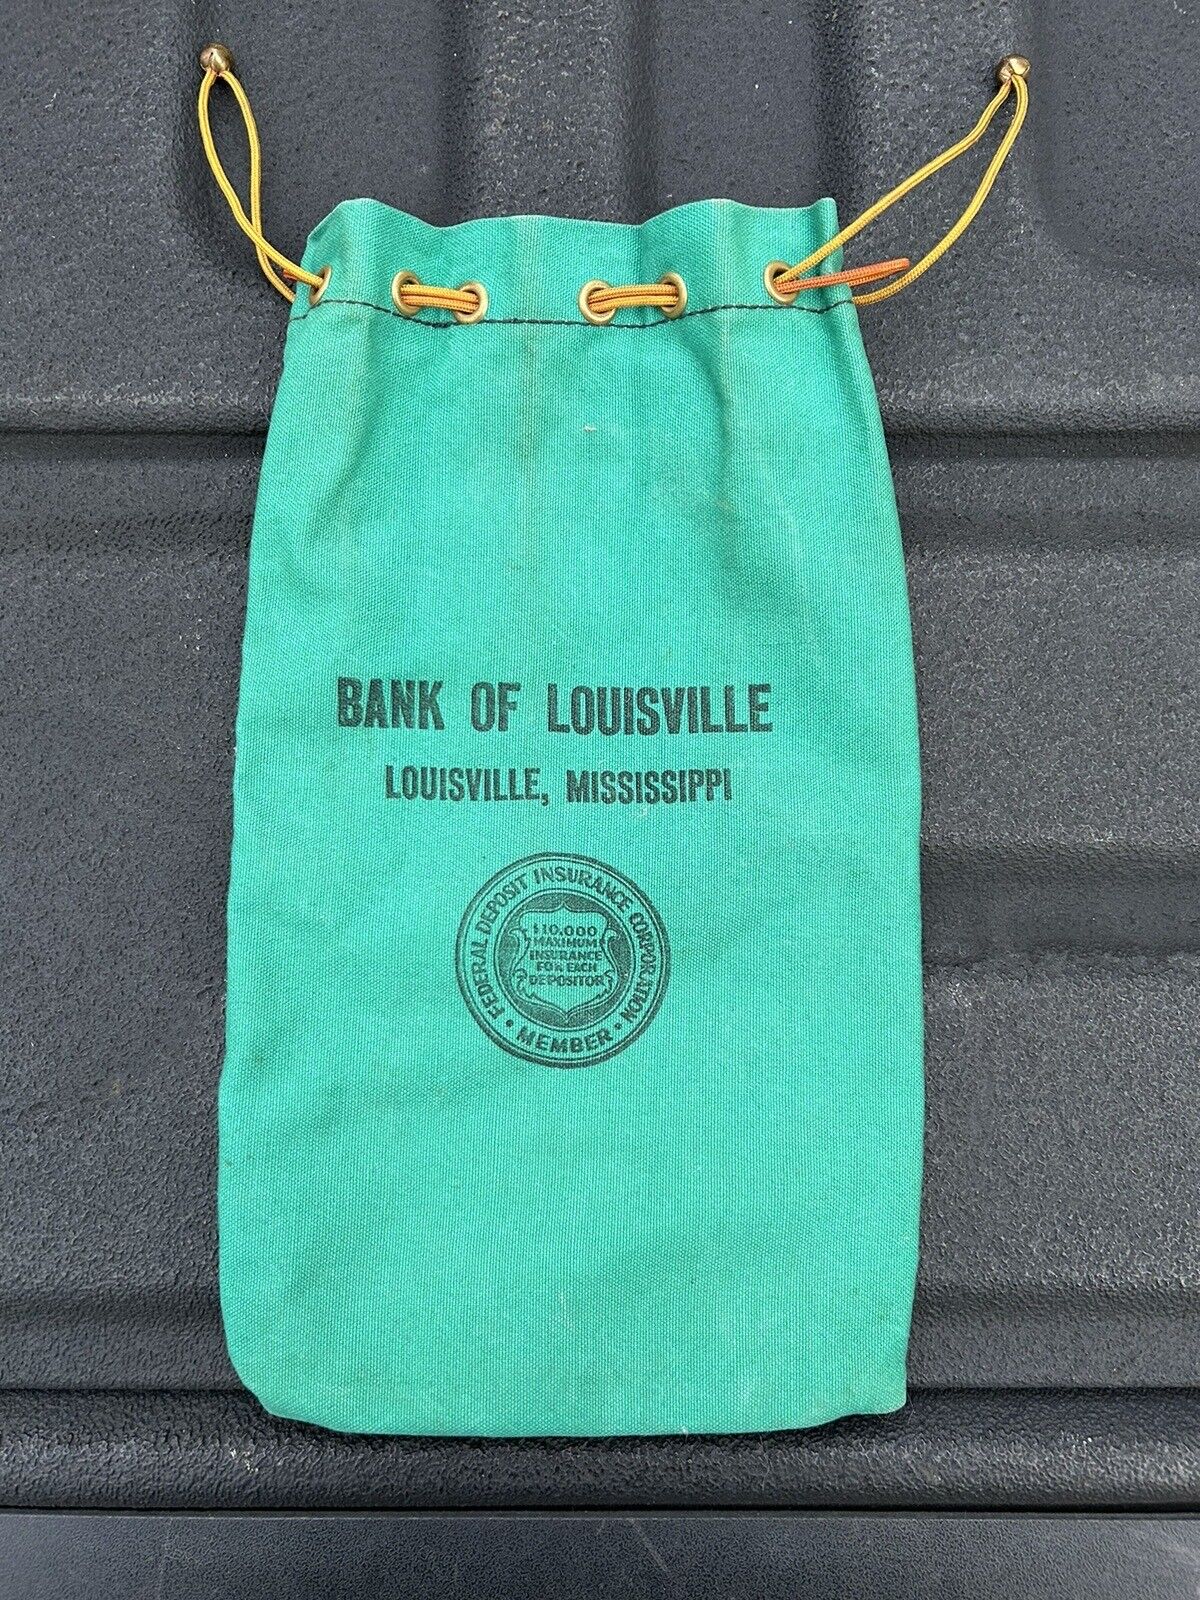 Vintage BANK OF LOUISVILLE - LOUISVILLE, MISSISSIPPI advertising bank bag